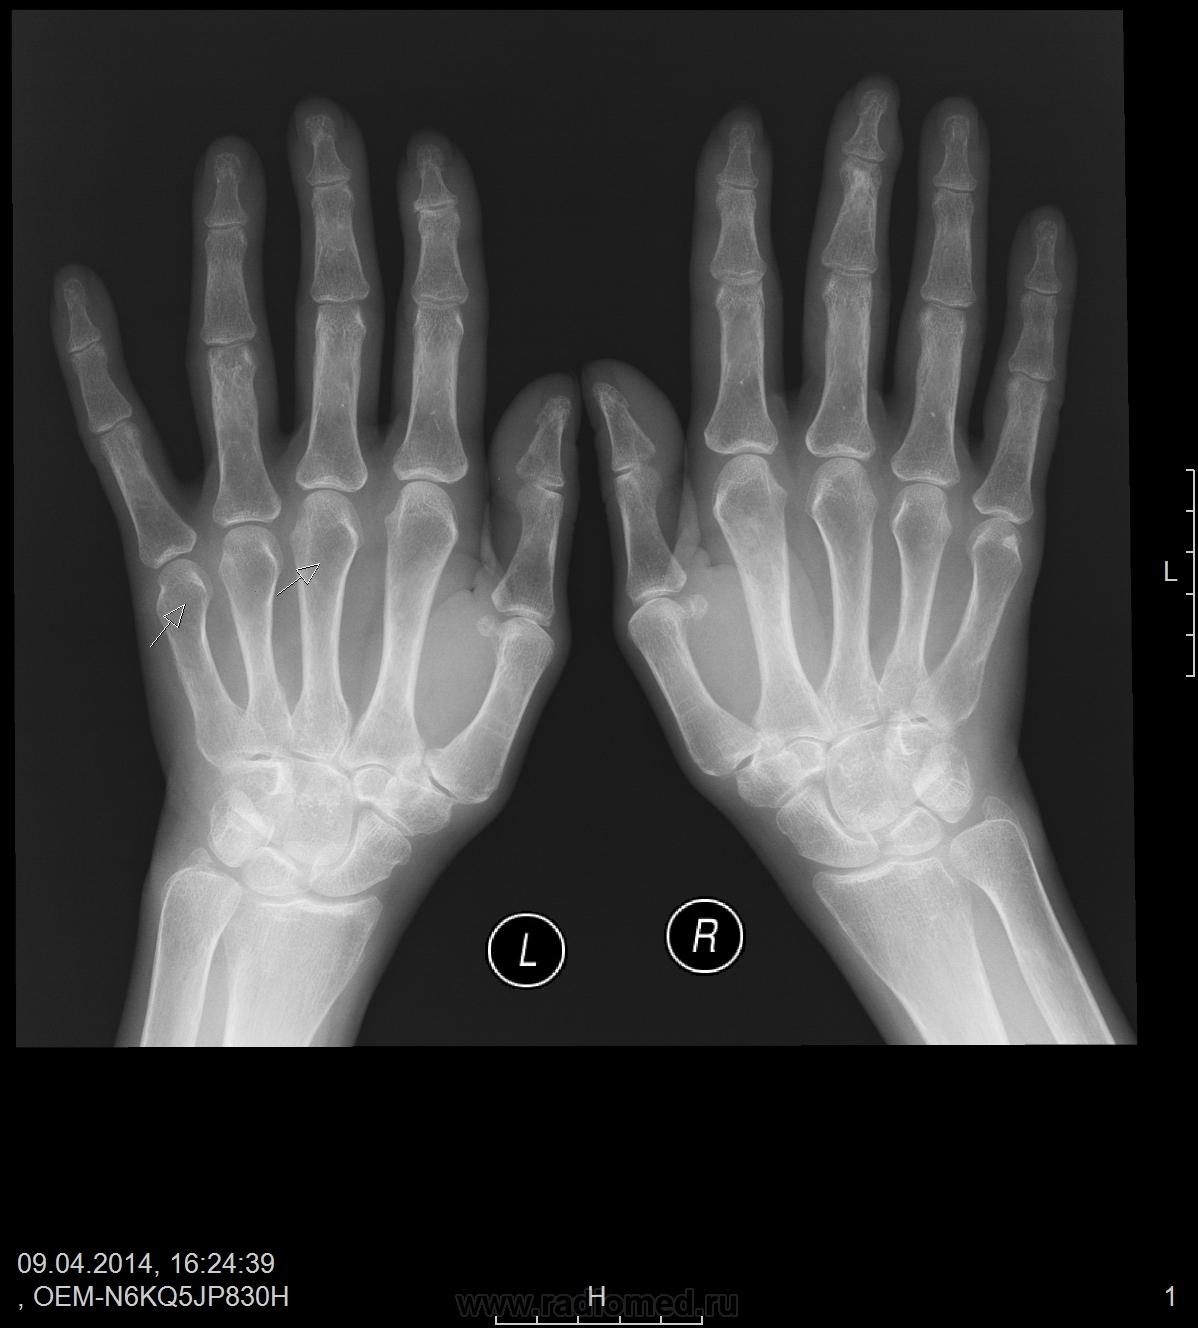 Околосуставной остеопороз кистей рук